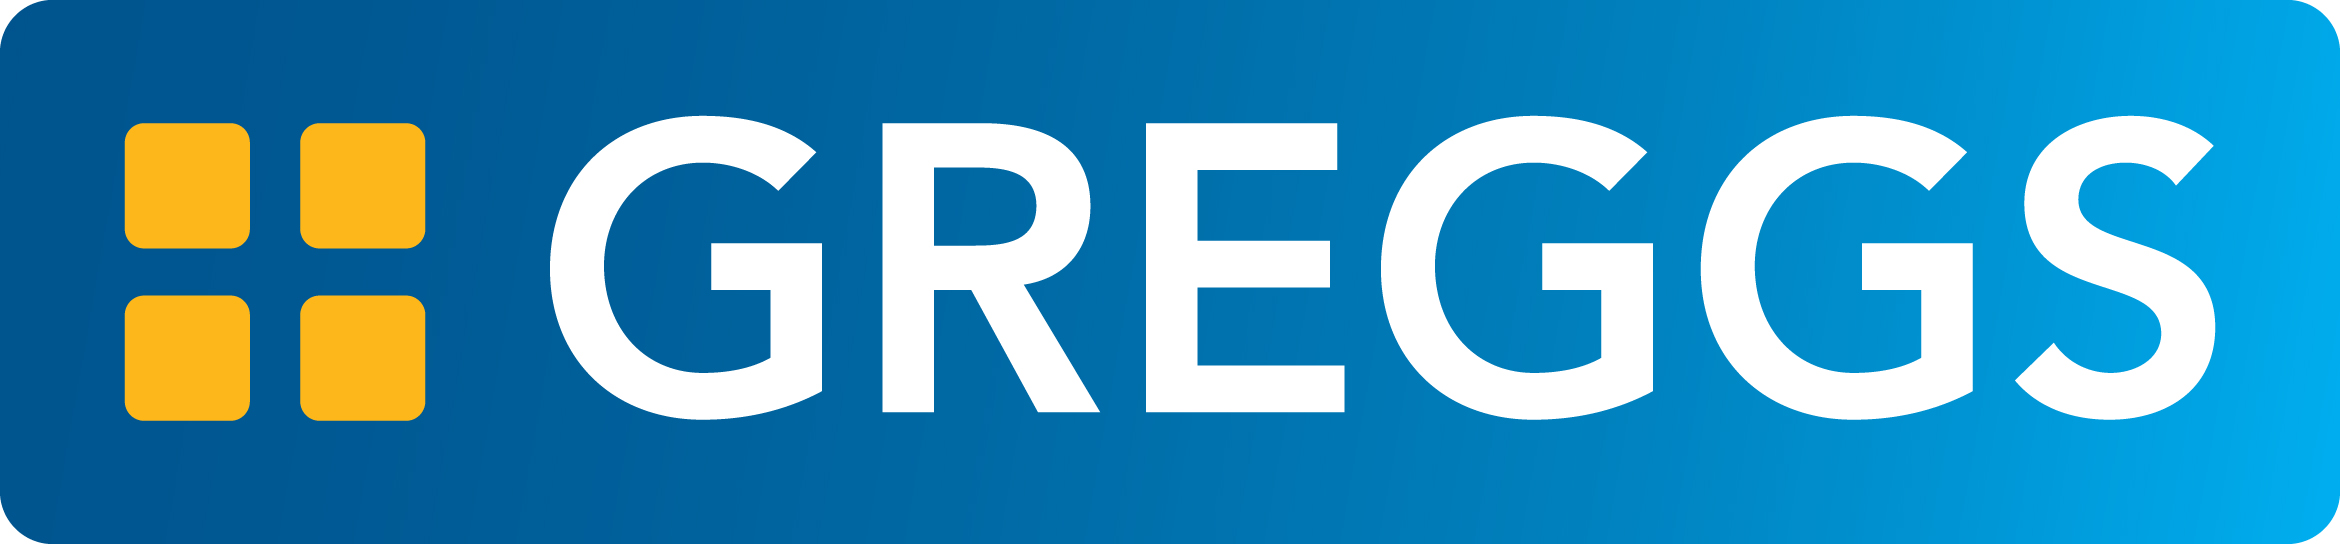 Greggs logo 2019